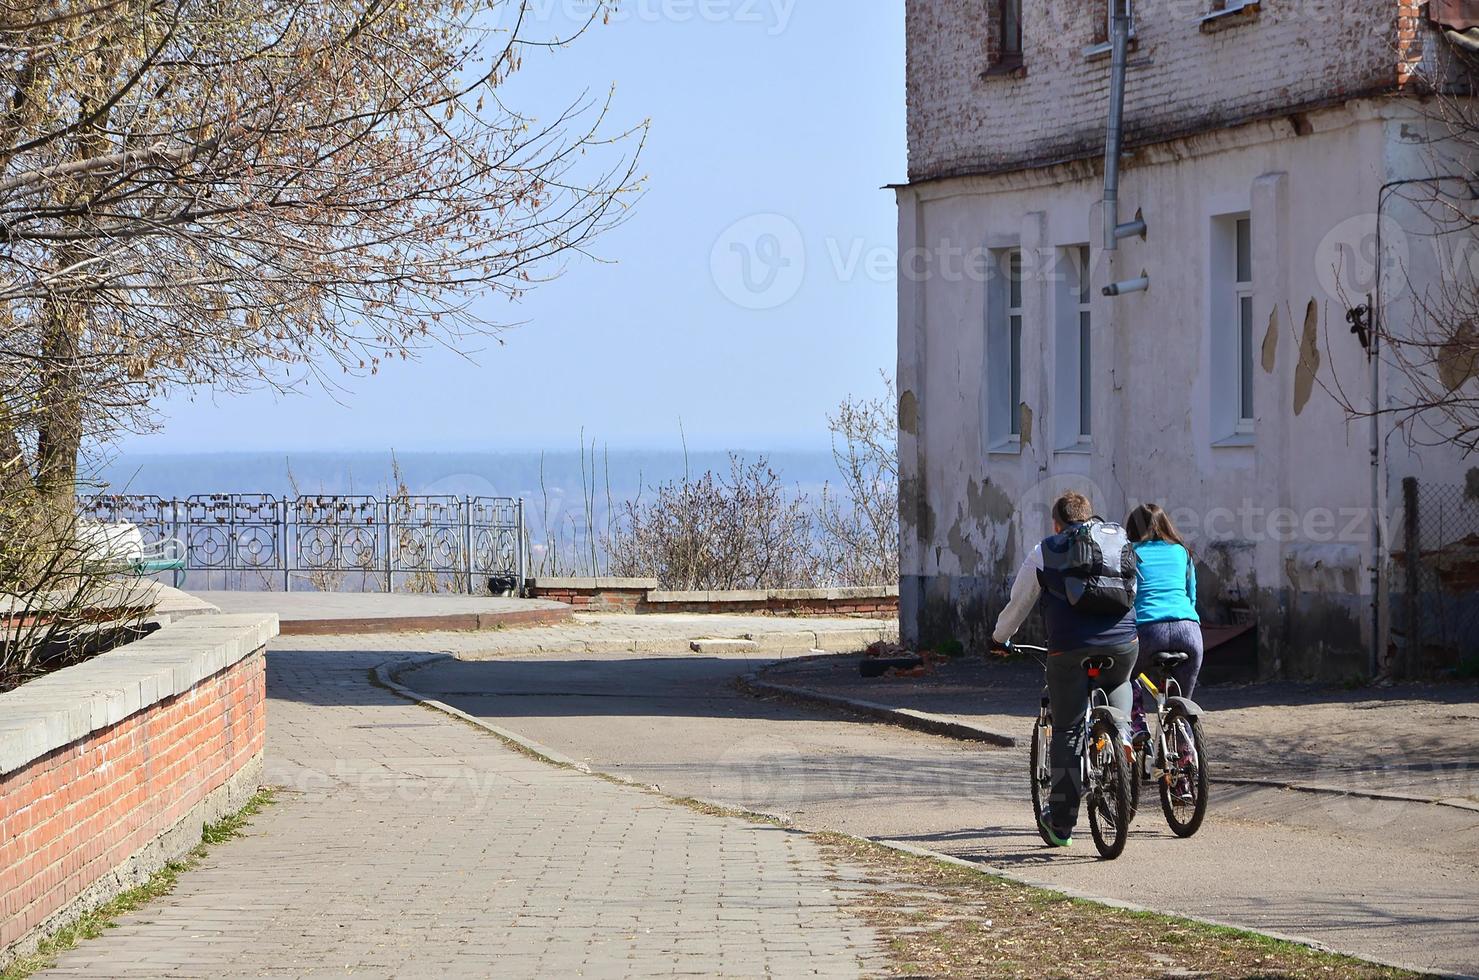 en ung par av cyklister rida genom tömma gator under klar väder. de kille och de flicka gå på cyklar foto